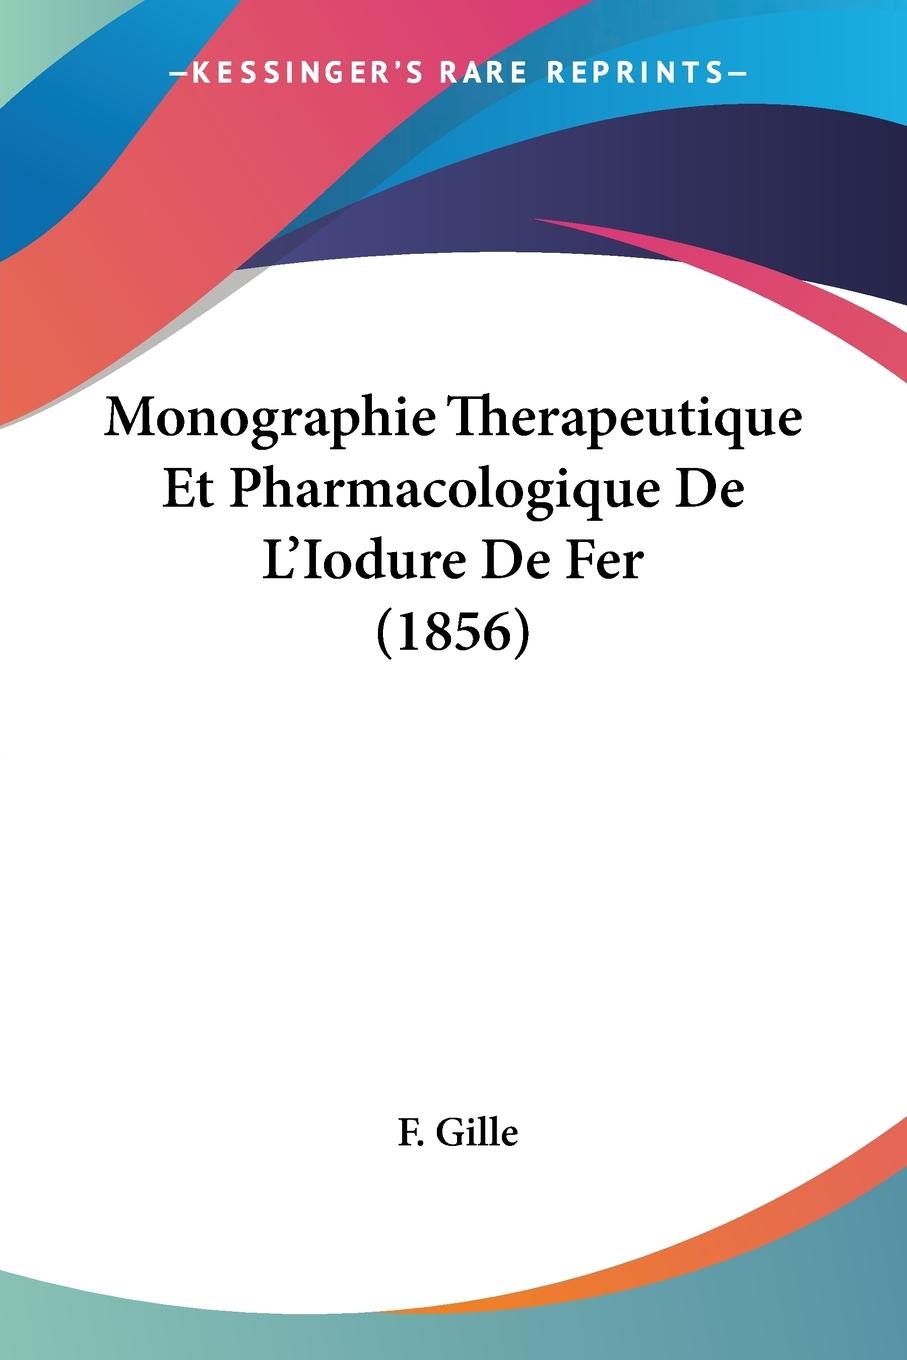 Monographie Therapeutique Et Pharmacologique De L Iodure De Fer (1856) - Gille, F.